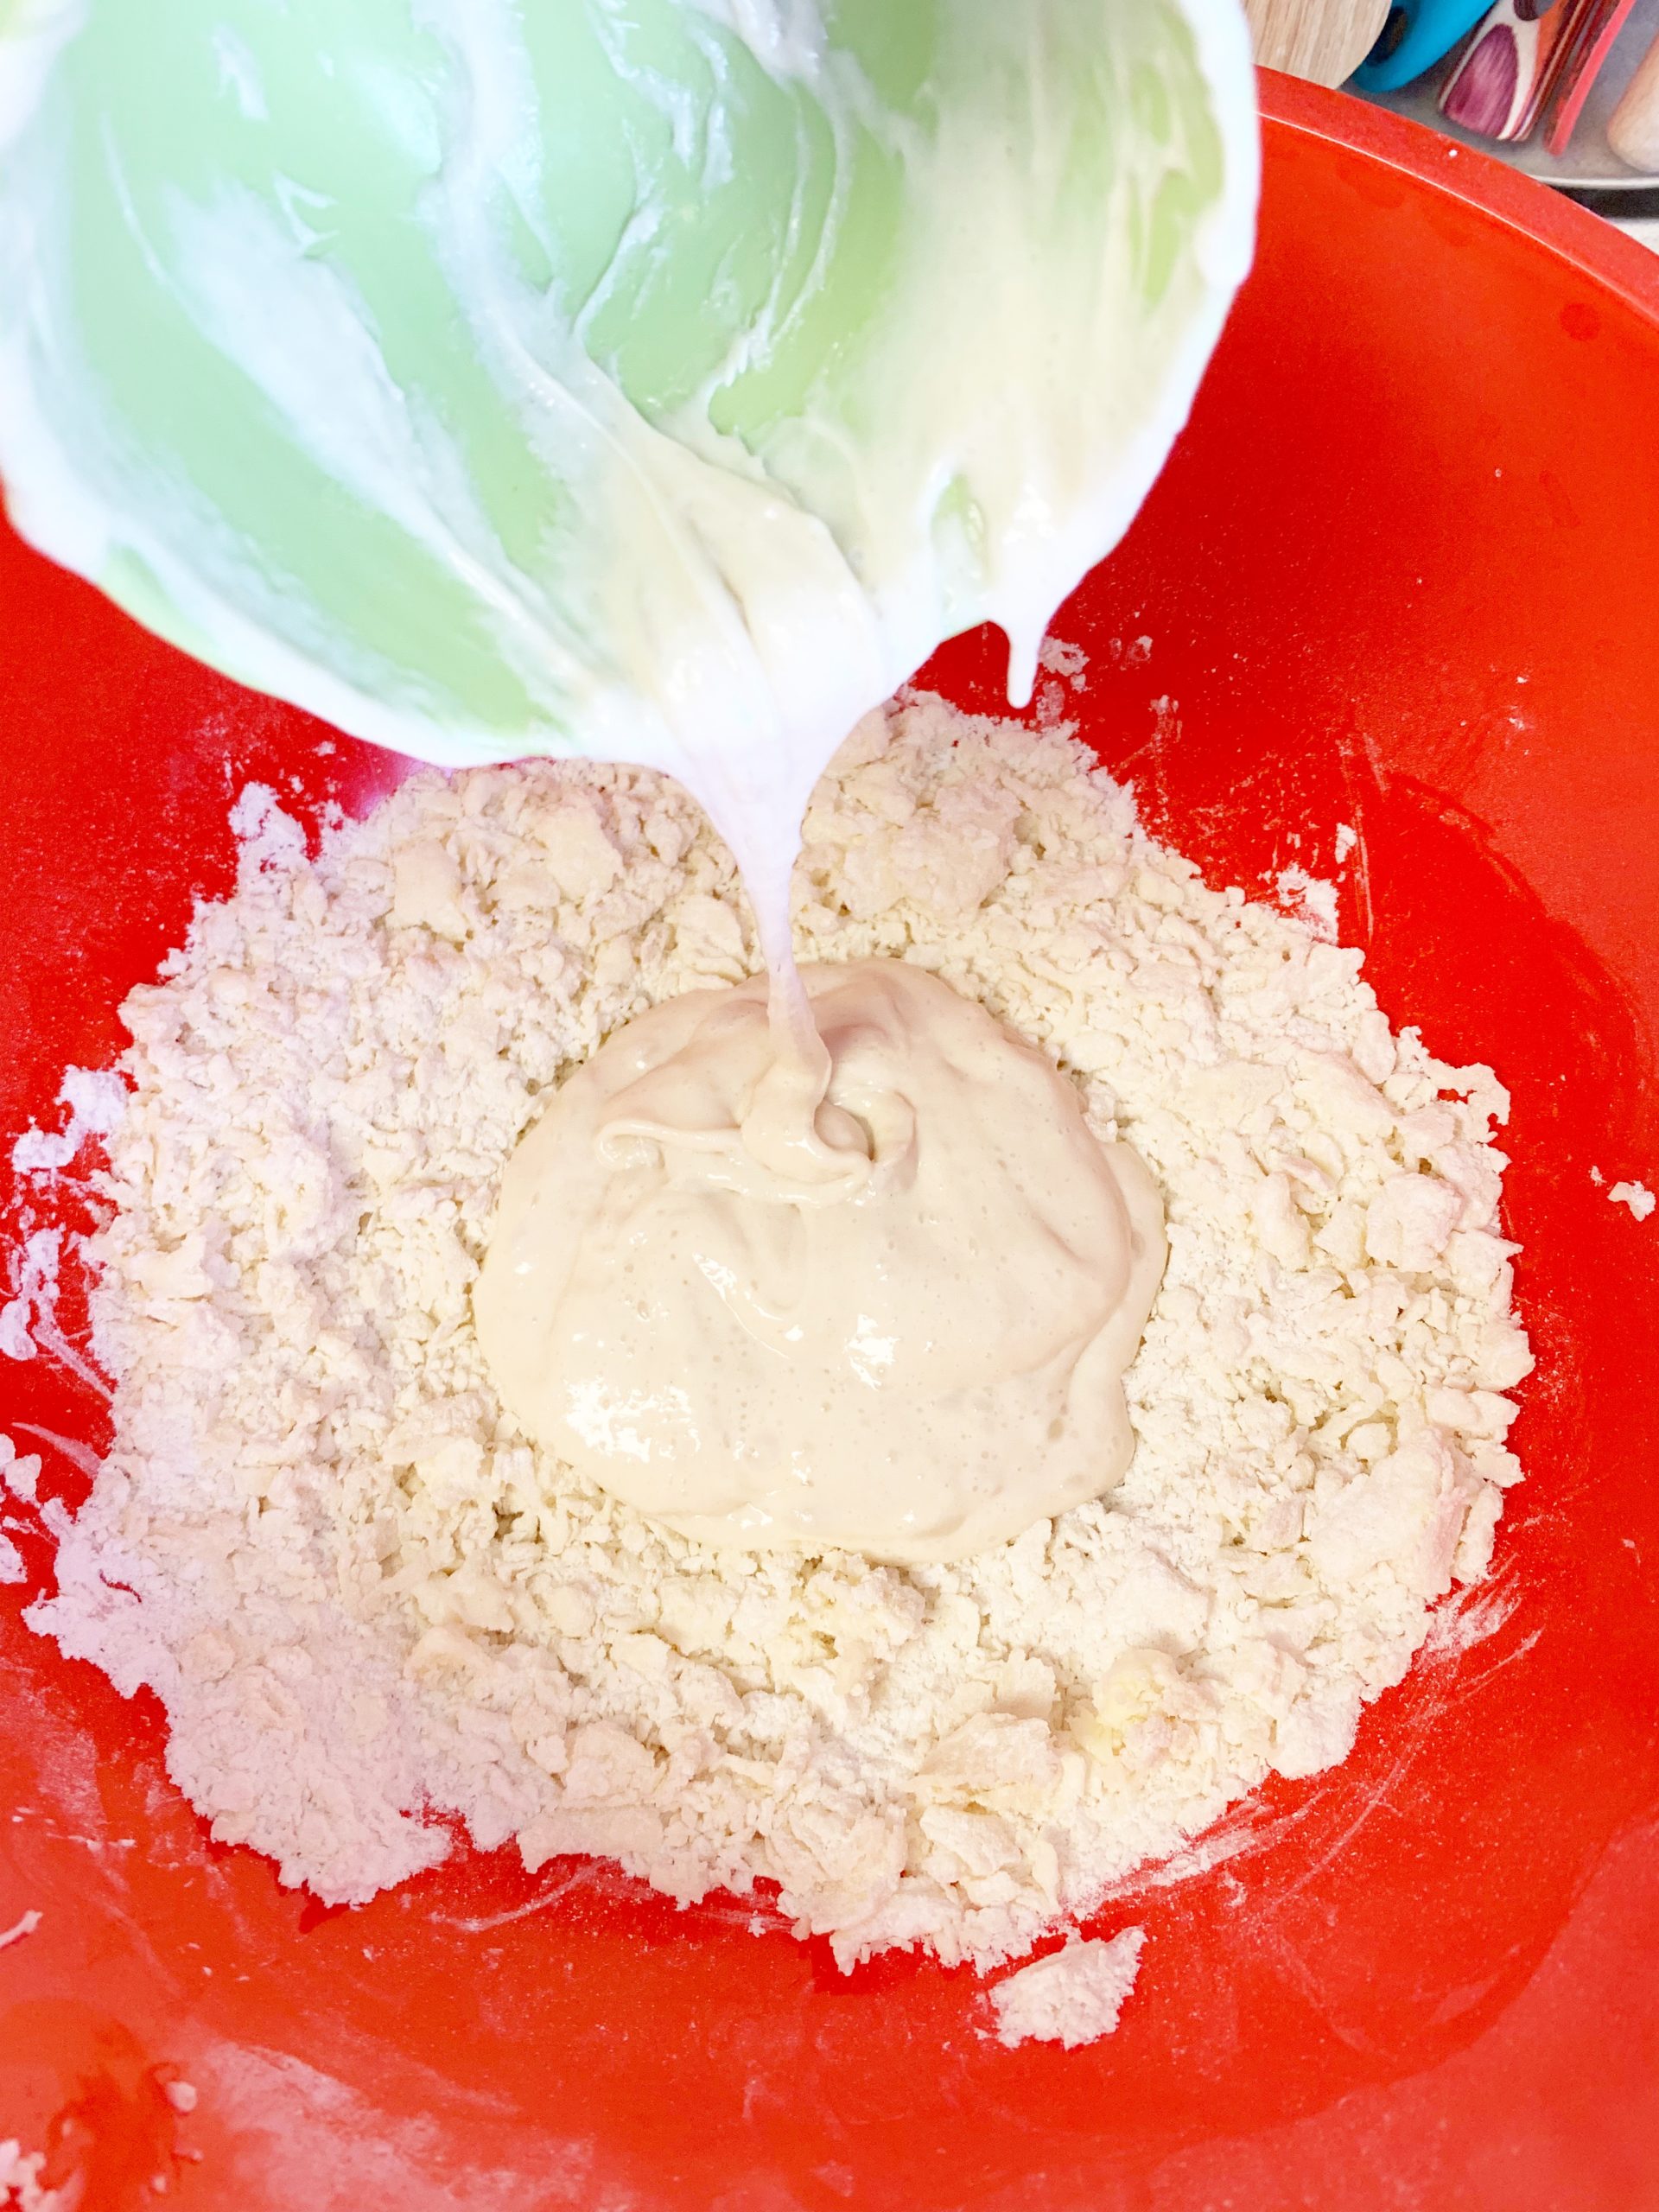 Adding sourdough starter into shaggy dough mix